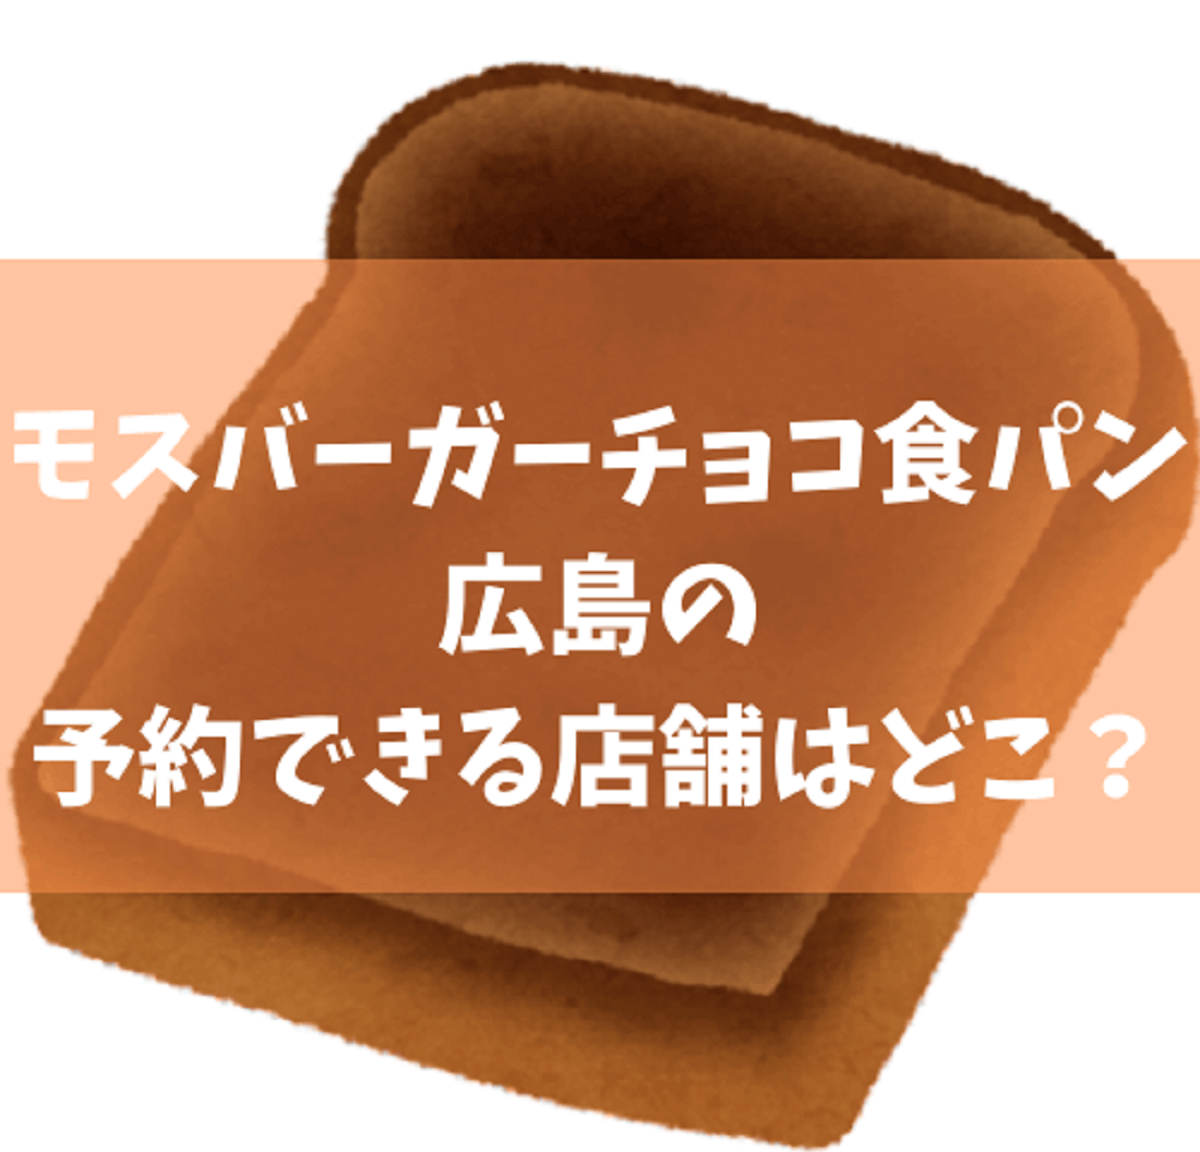 モスバーガーチョコ食パン 広島